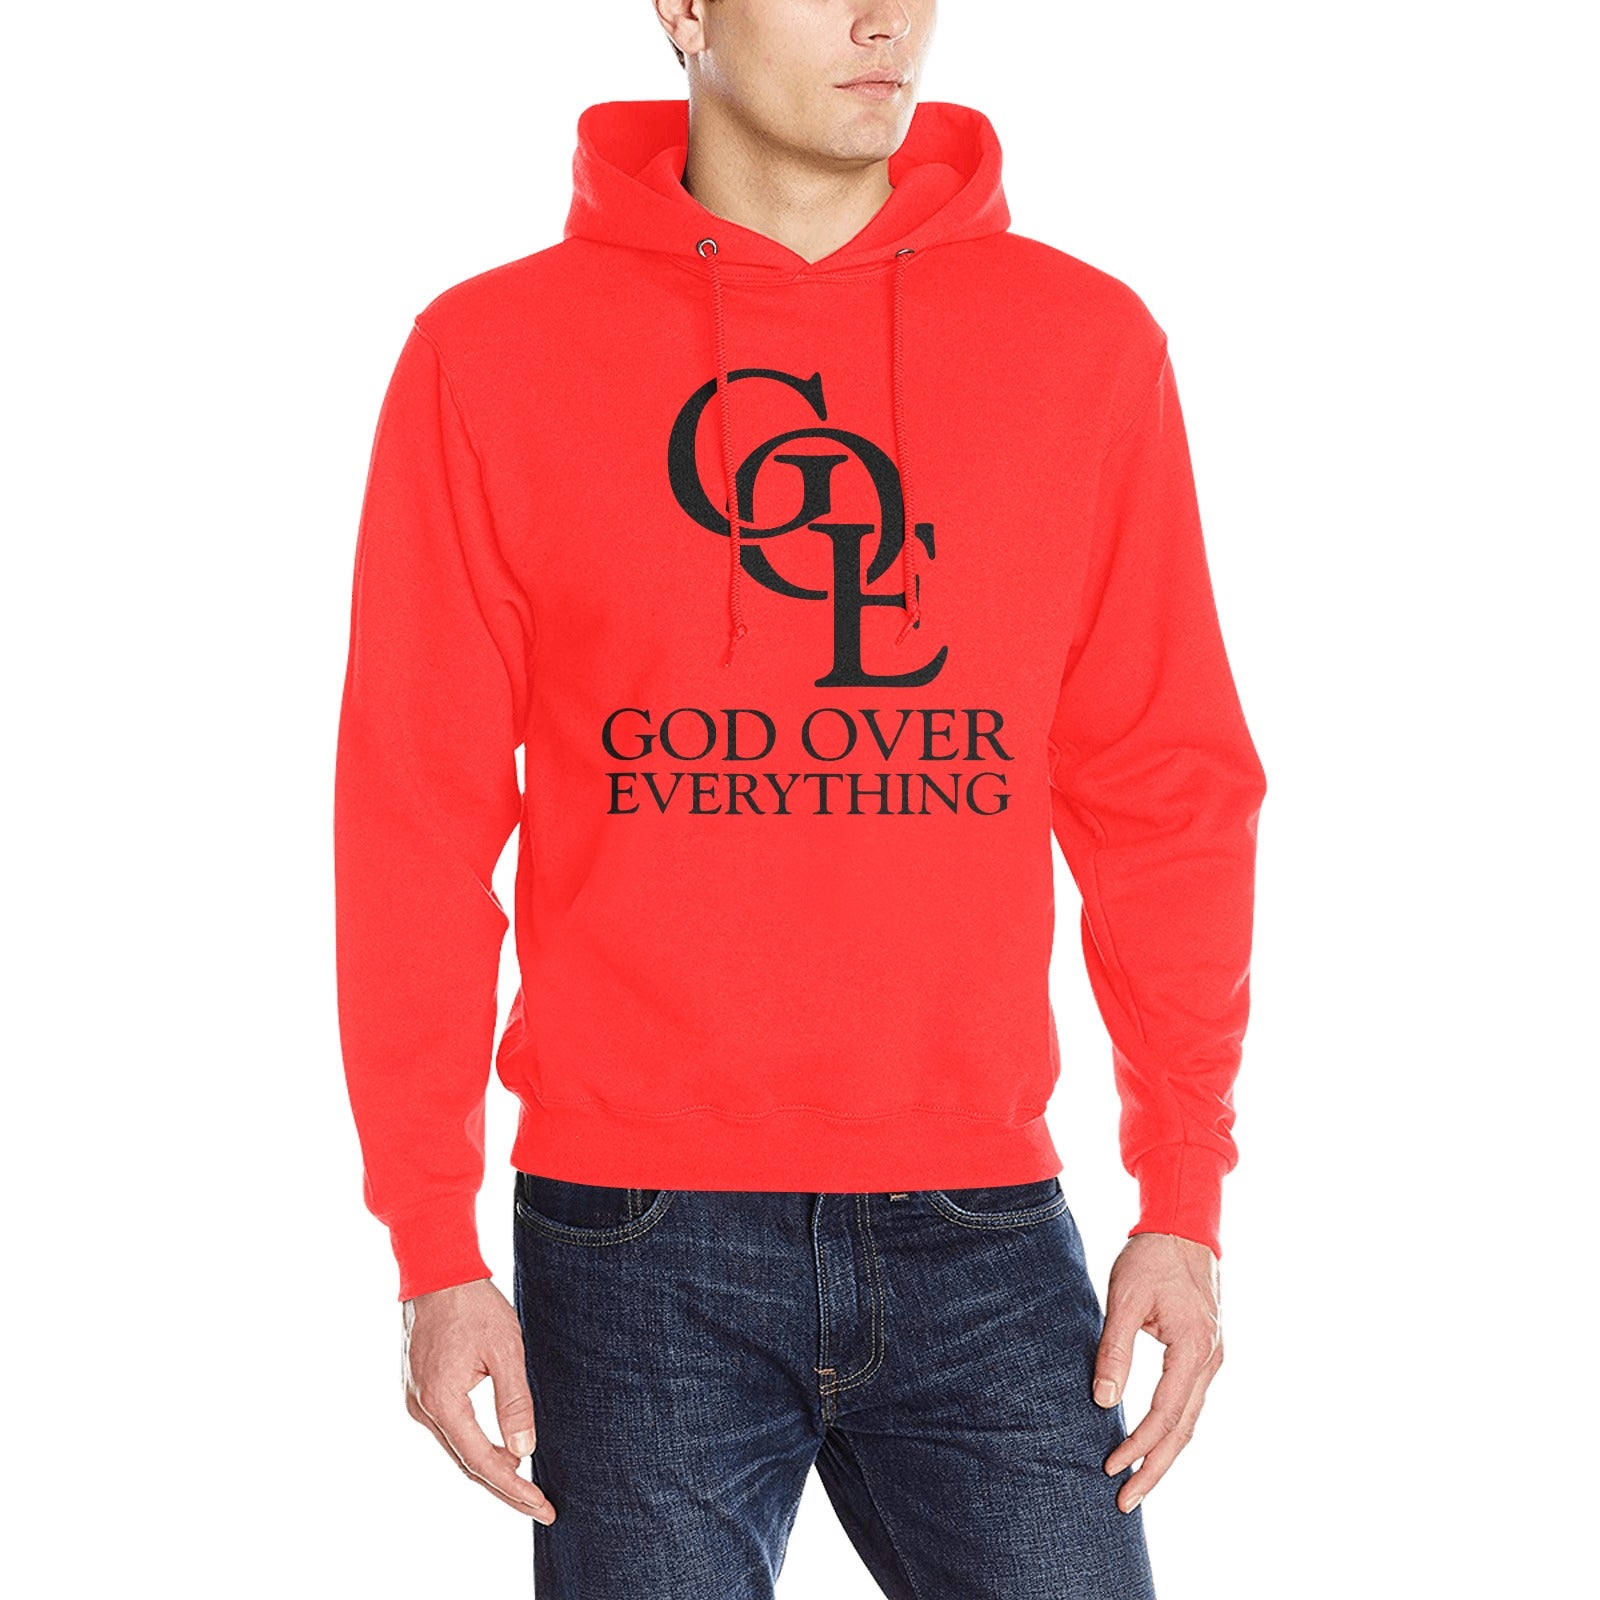 Red new Goe hoodie